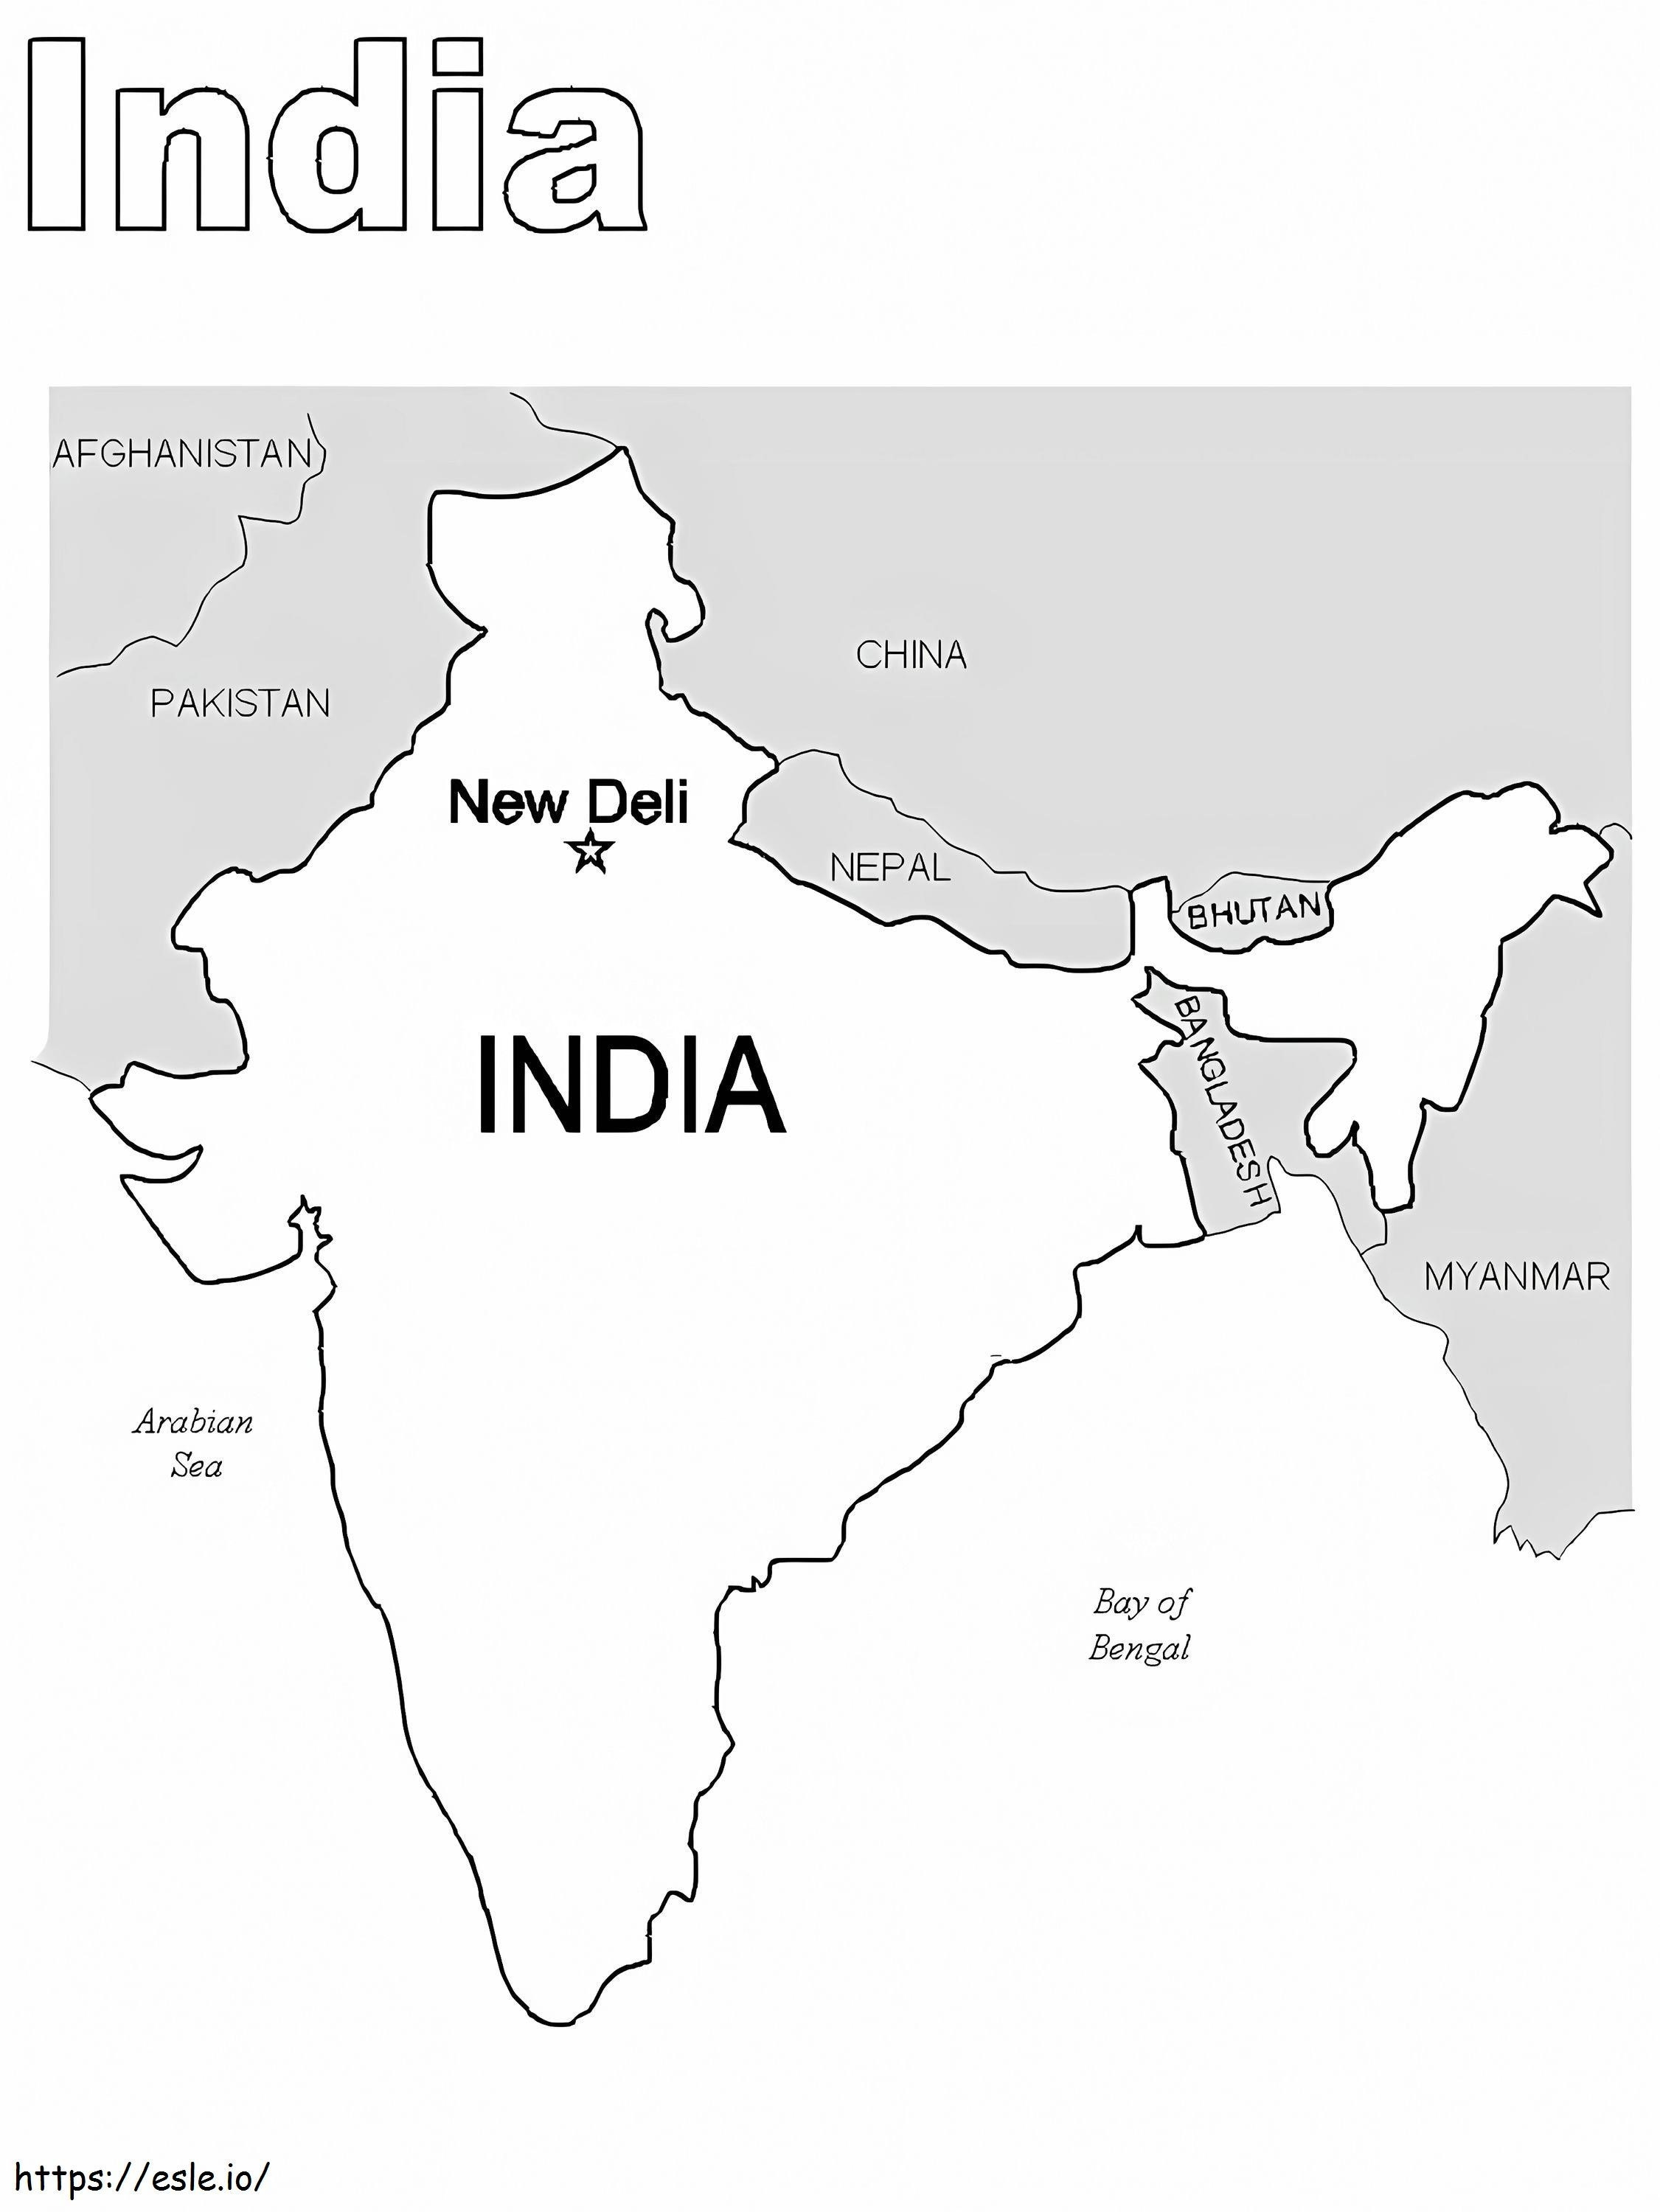 Hindistan Haritası Boyama Sayfası boyama